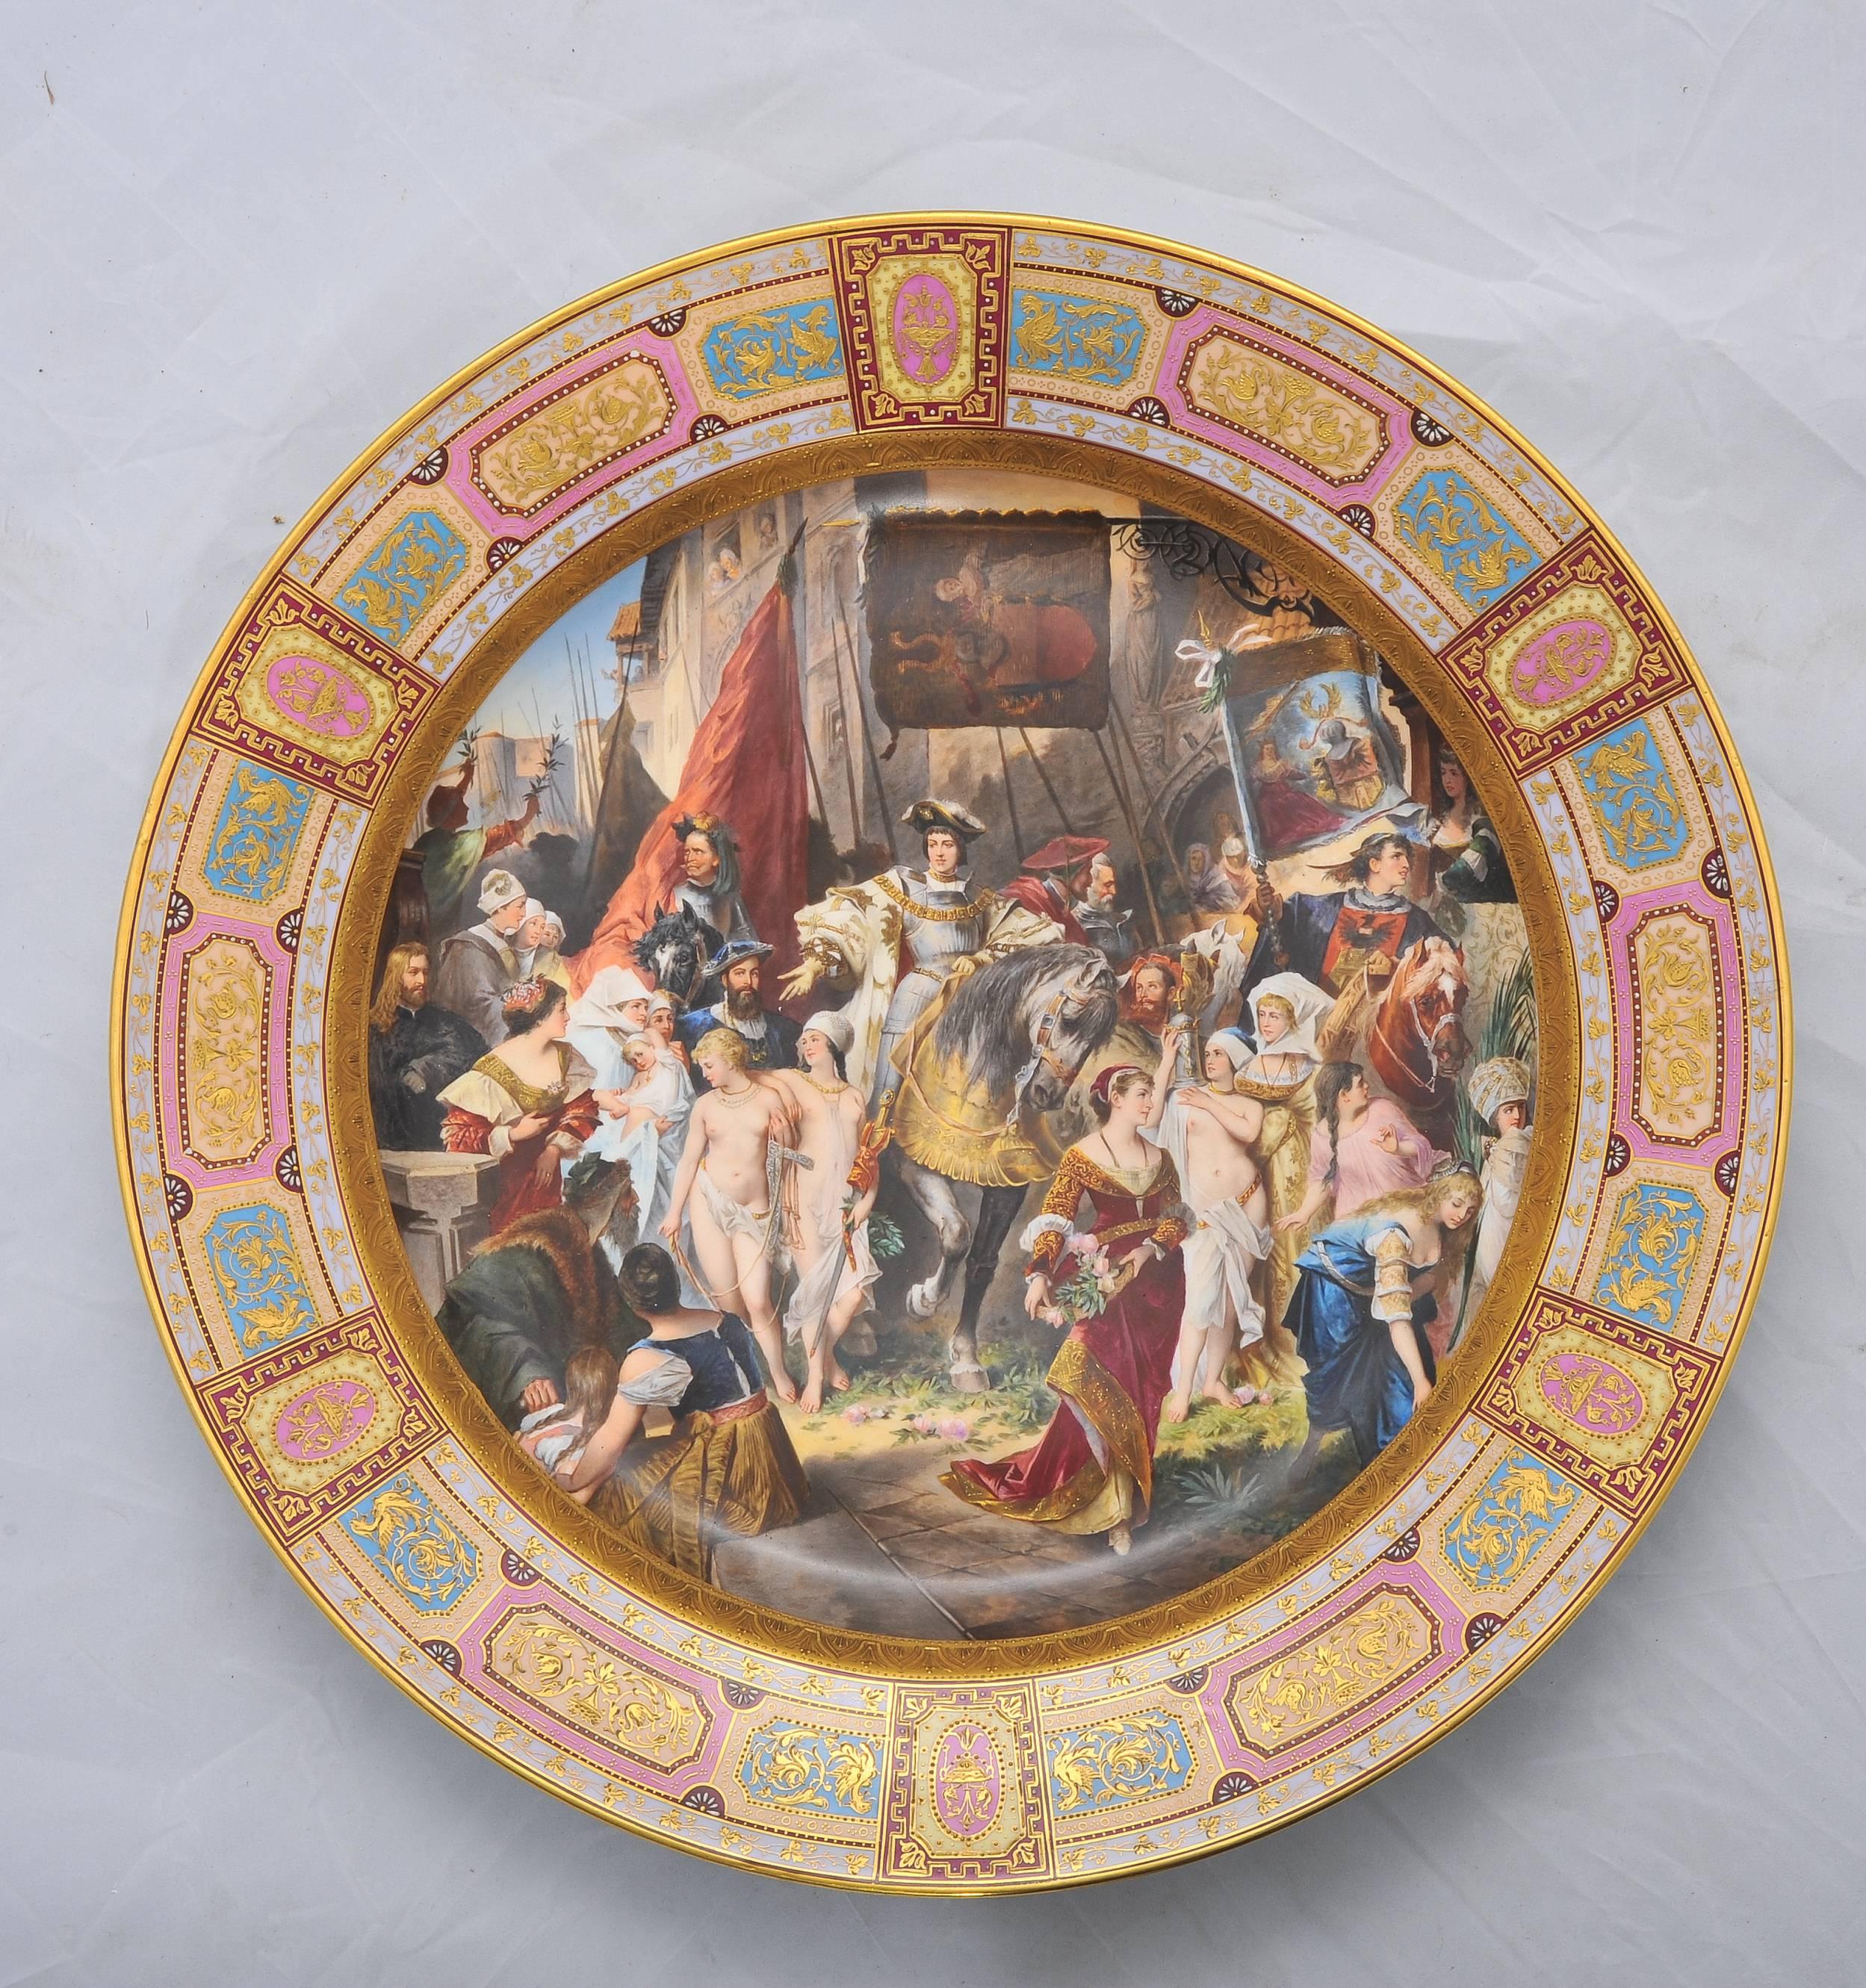 Großes und beeindruckendes Wiener Porzellan mit einer handgemalten Szene, die Kaiser Karl V. in Antwerpen zeigt.
Wiener Porzellanmarke auf dem Sockel.